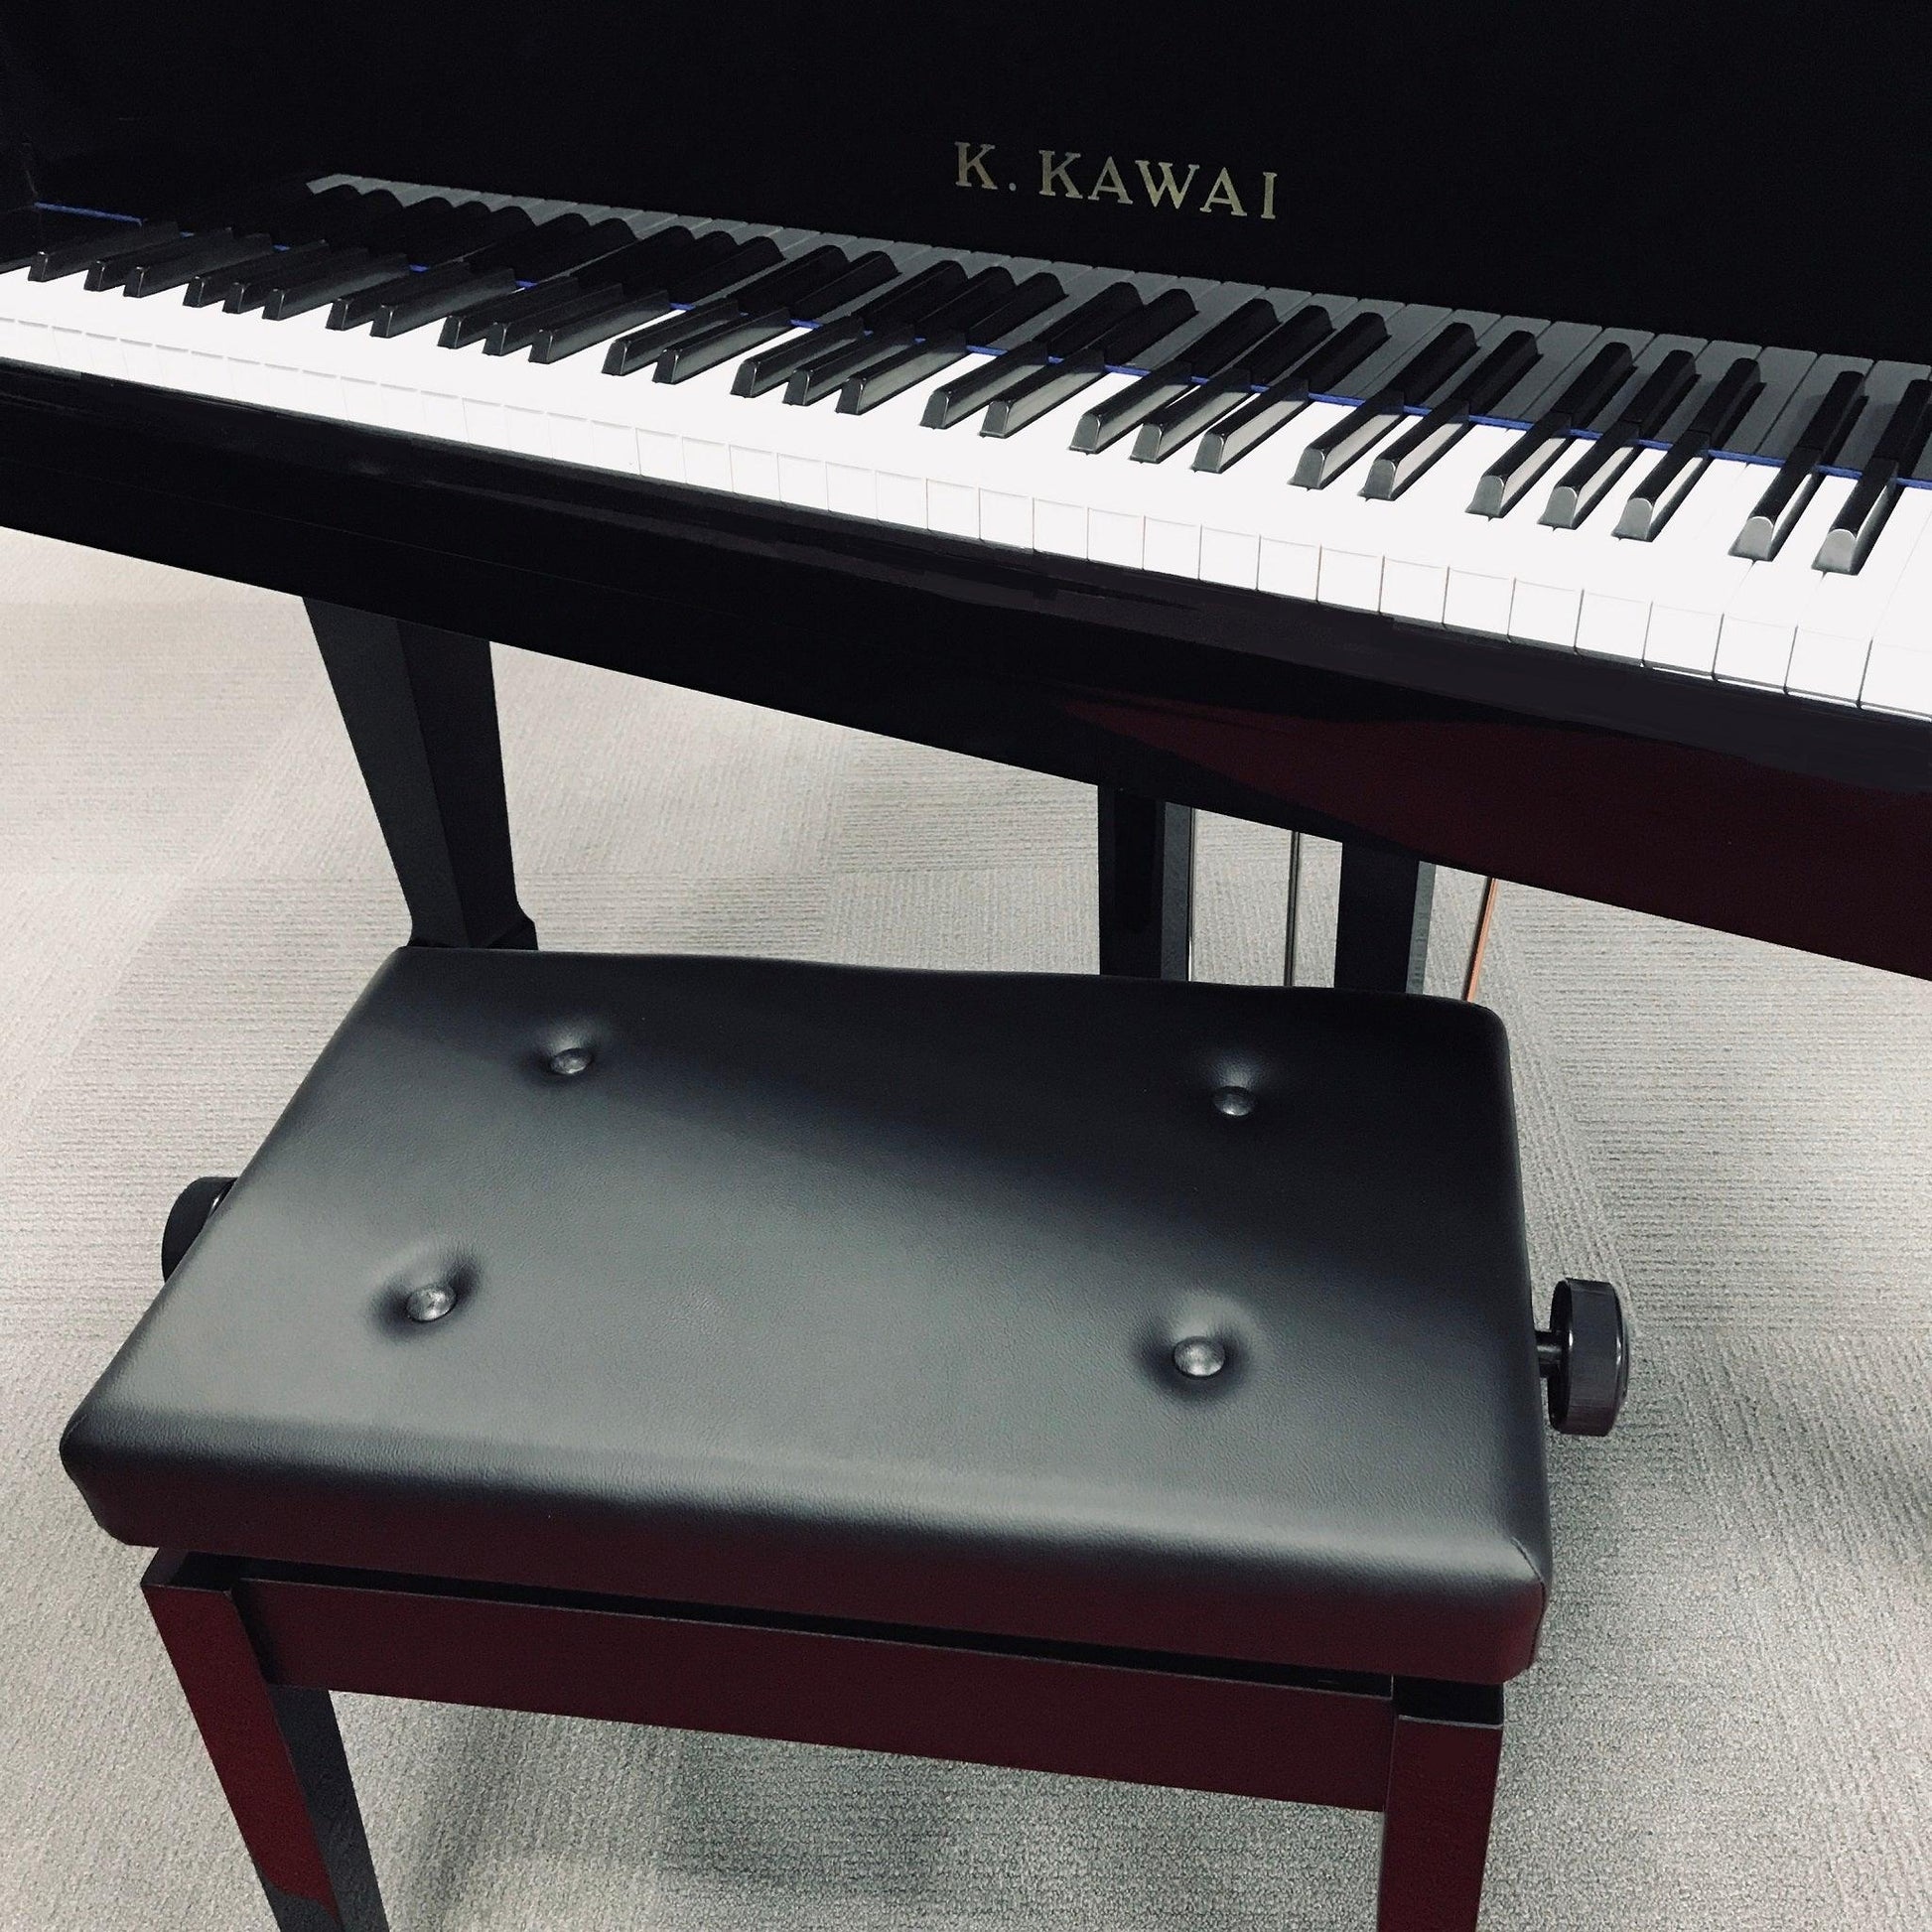 K. Kawai KG-1A Professional Baby Grand Piano